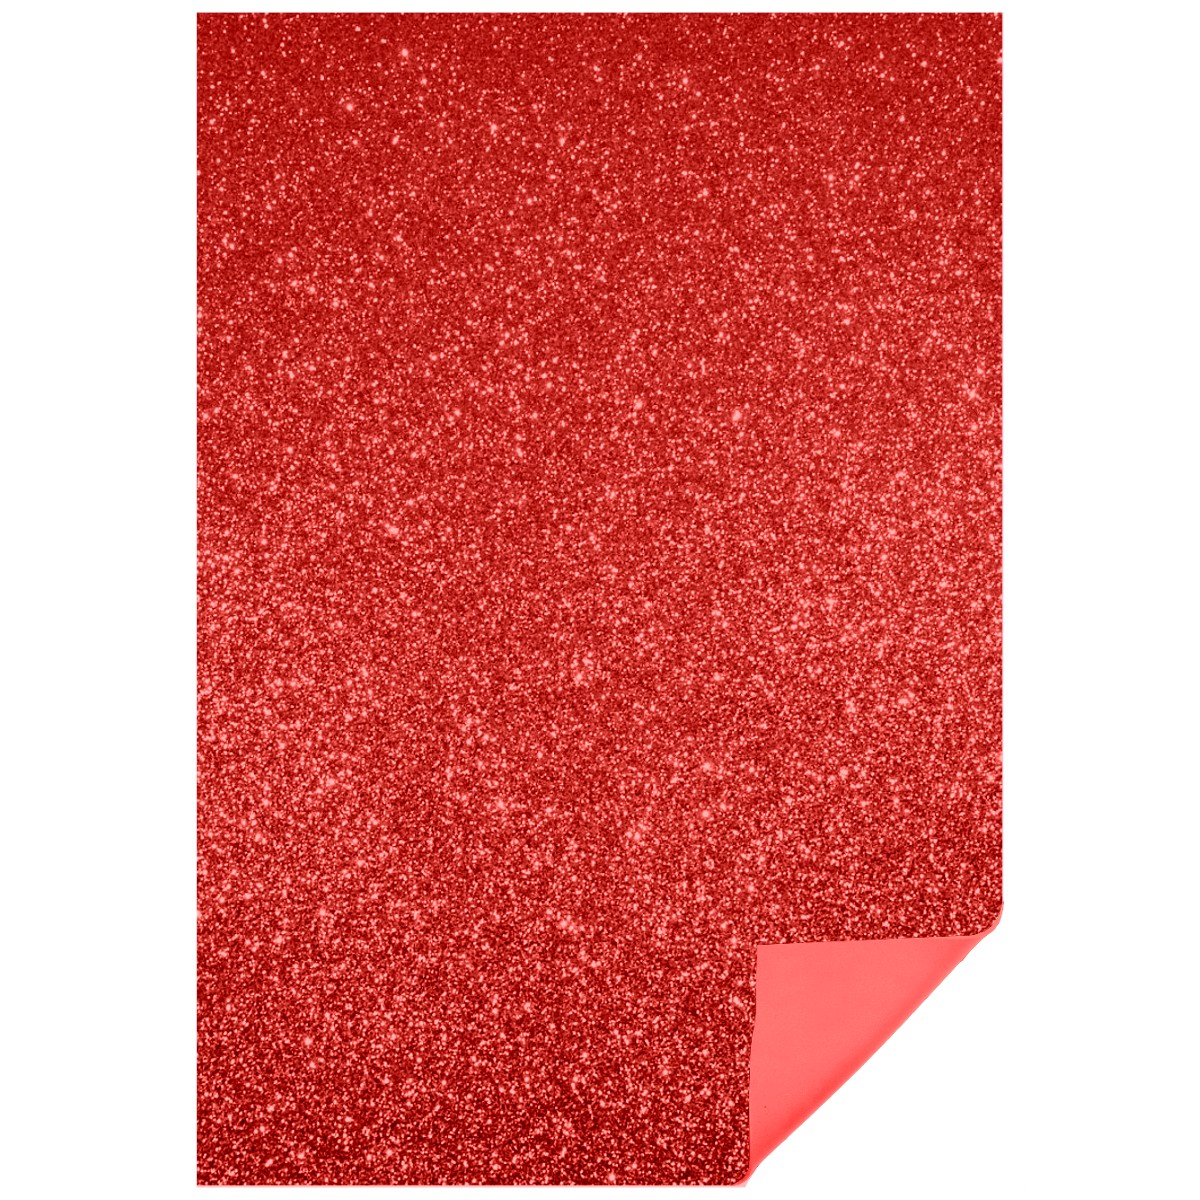 Carton buretat rosu cu sclipici 40x60cm x 2mm MP PN574-08